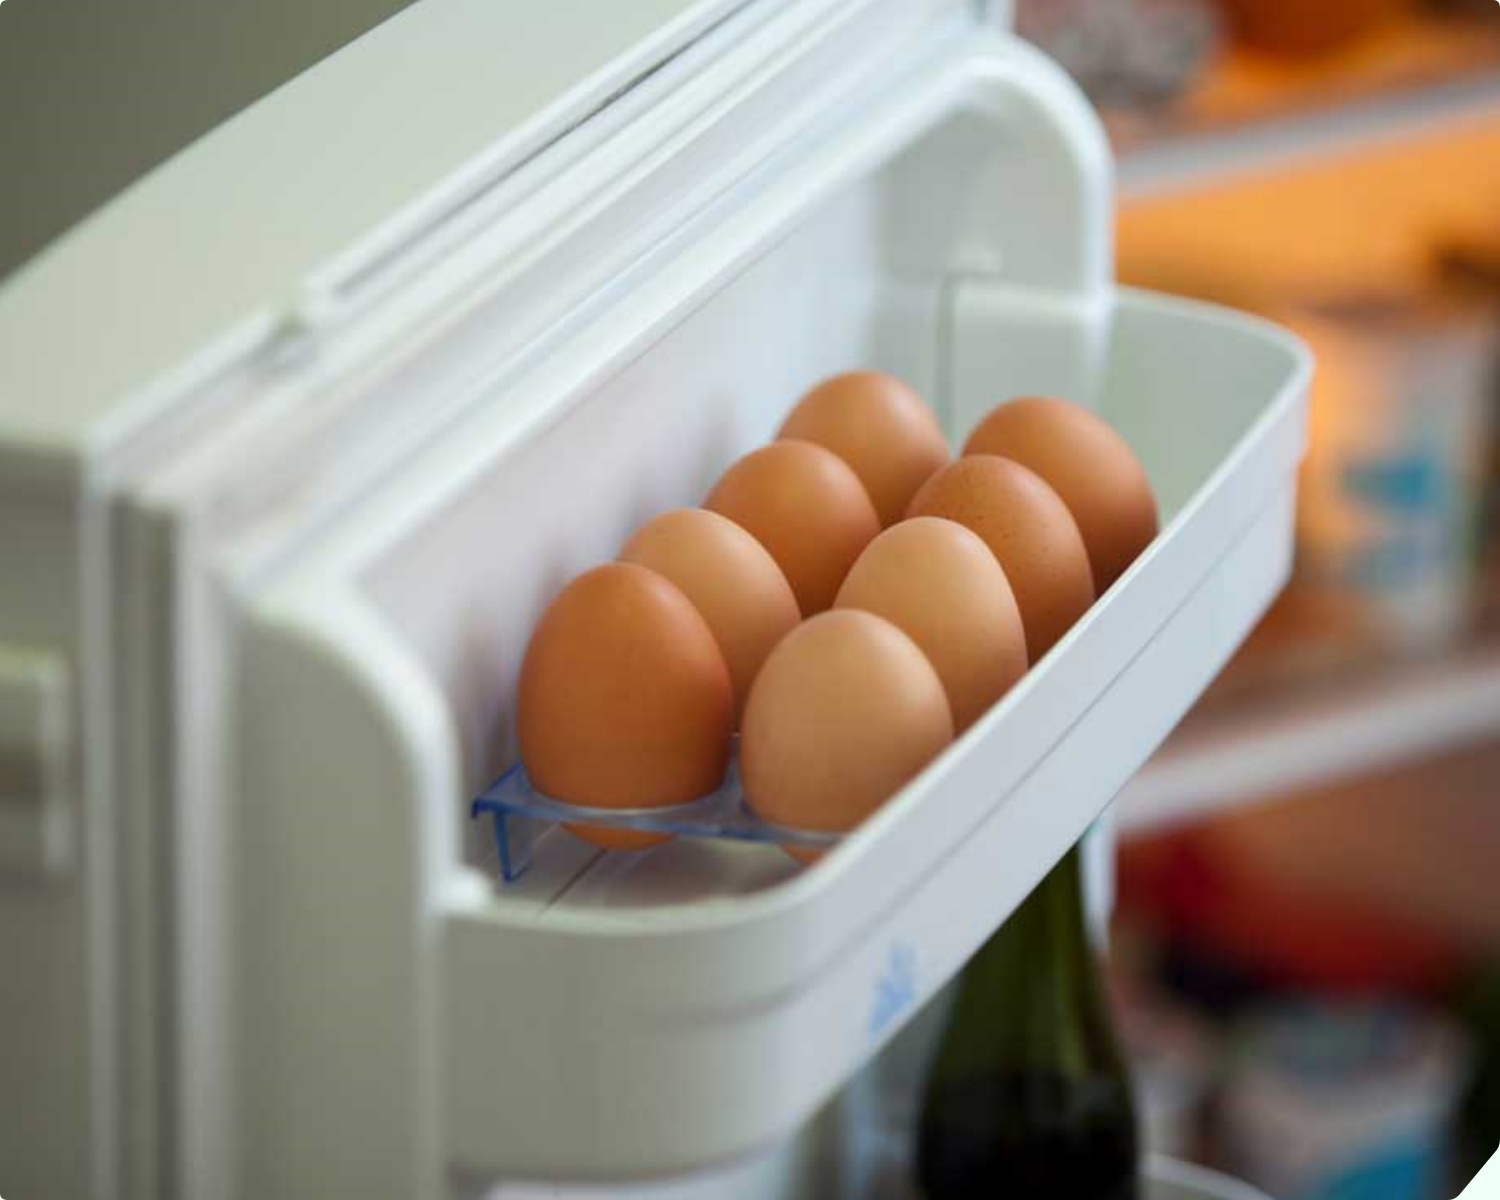 5 loại thực phẩm đừng bao giờ để ở cánh tủ lạnh, hãy lấy ra nhanh kẻo rước họa vào thân - 3